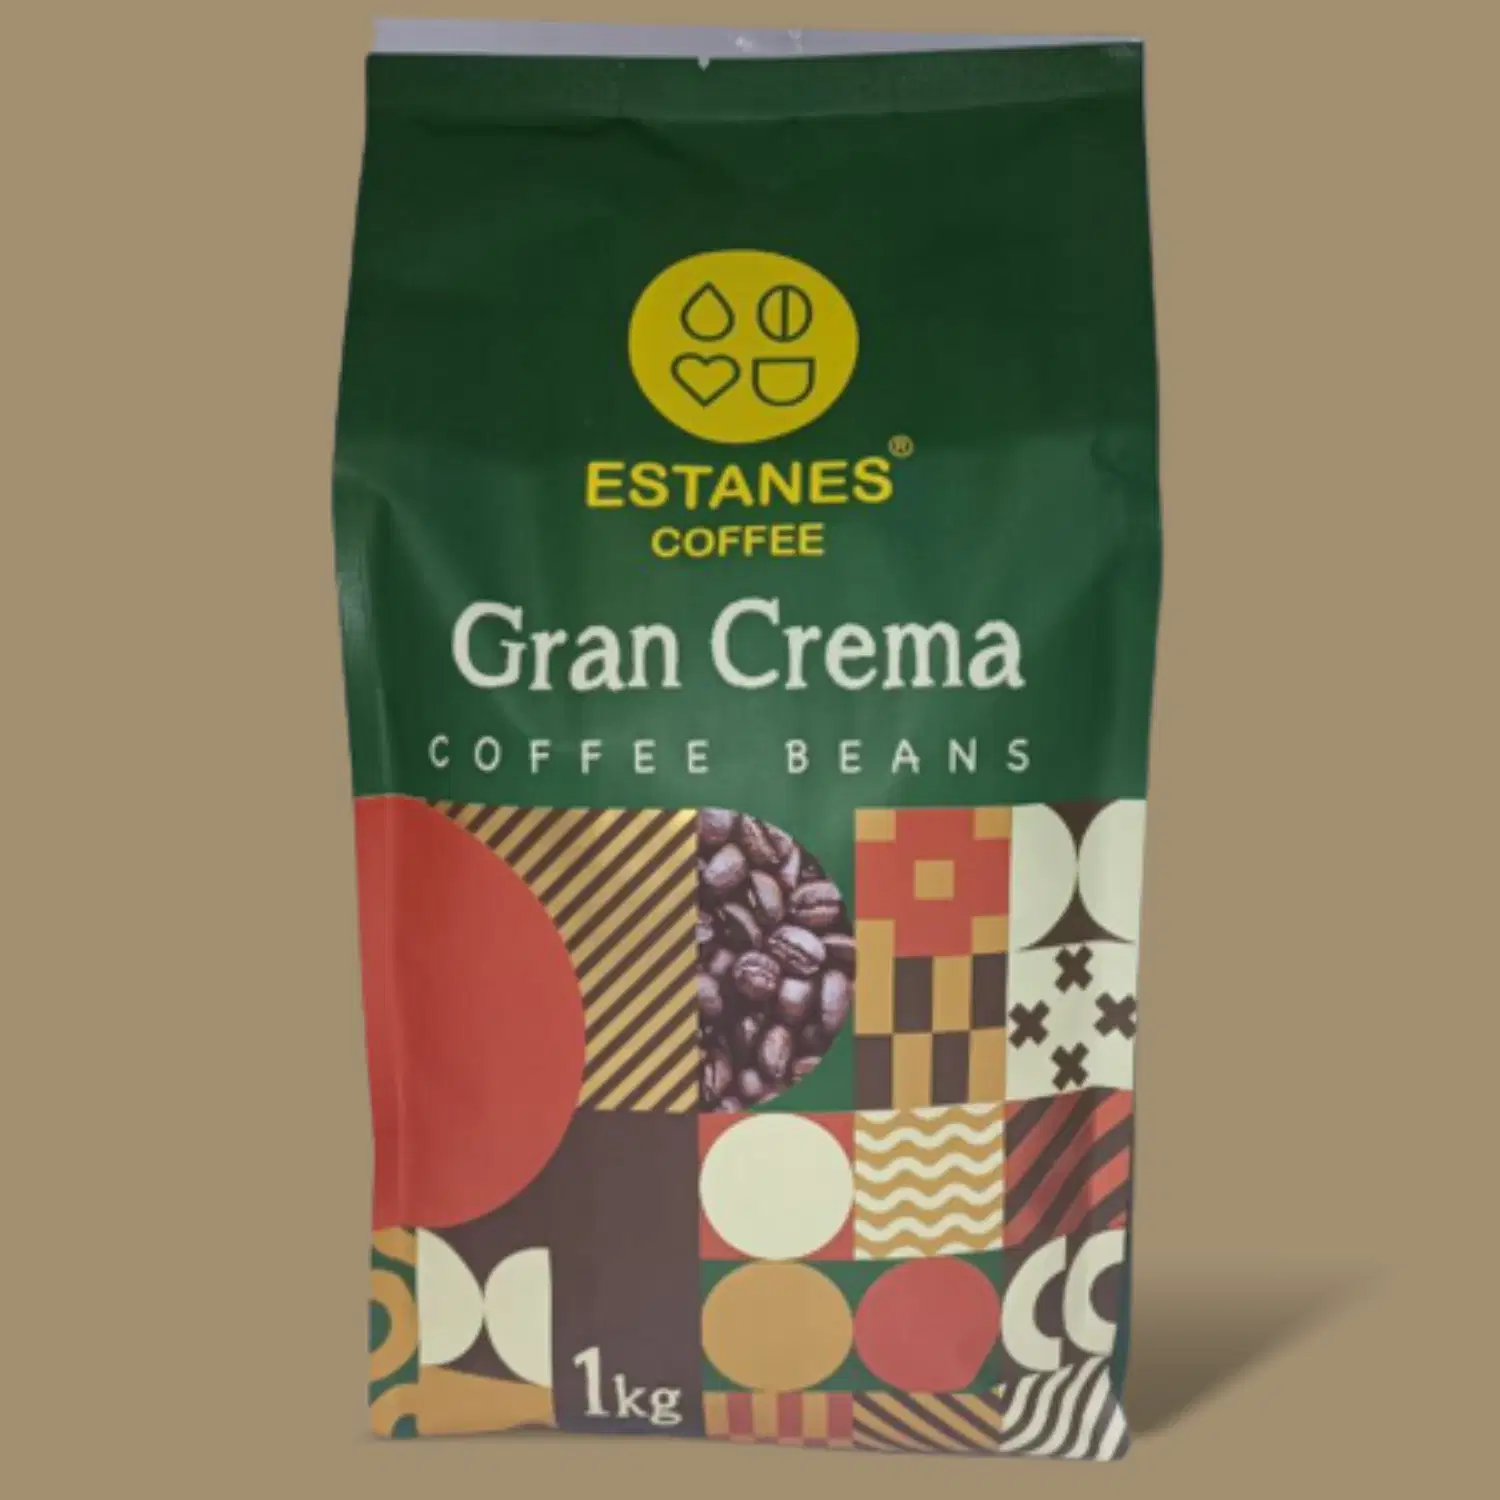 استانس گرن کرما لاتین( Gran Crema ) 90%روبستا